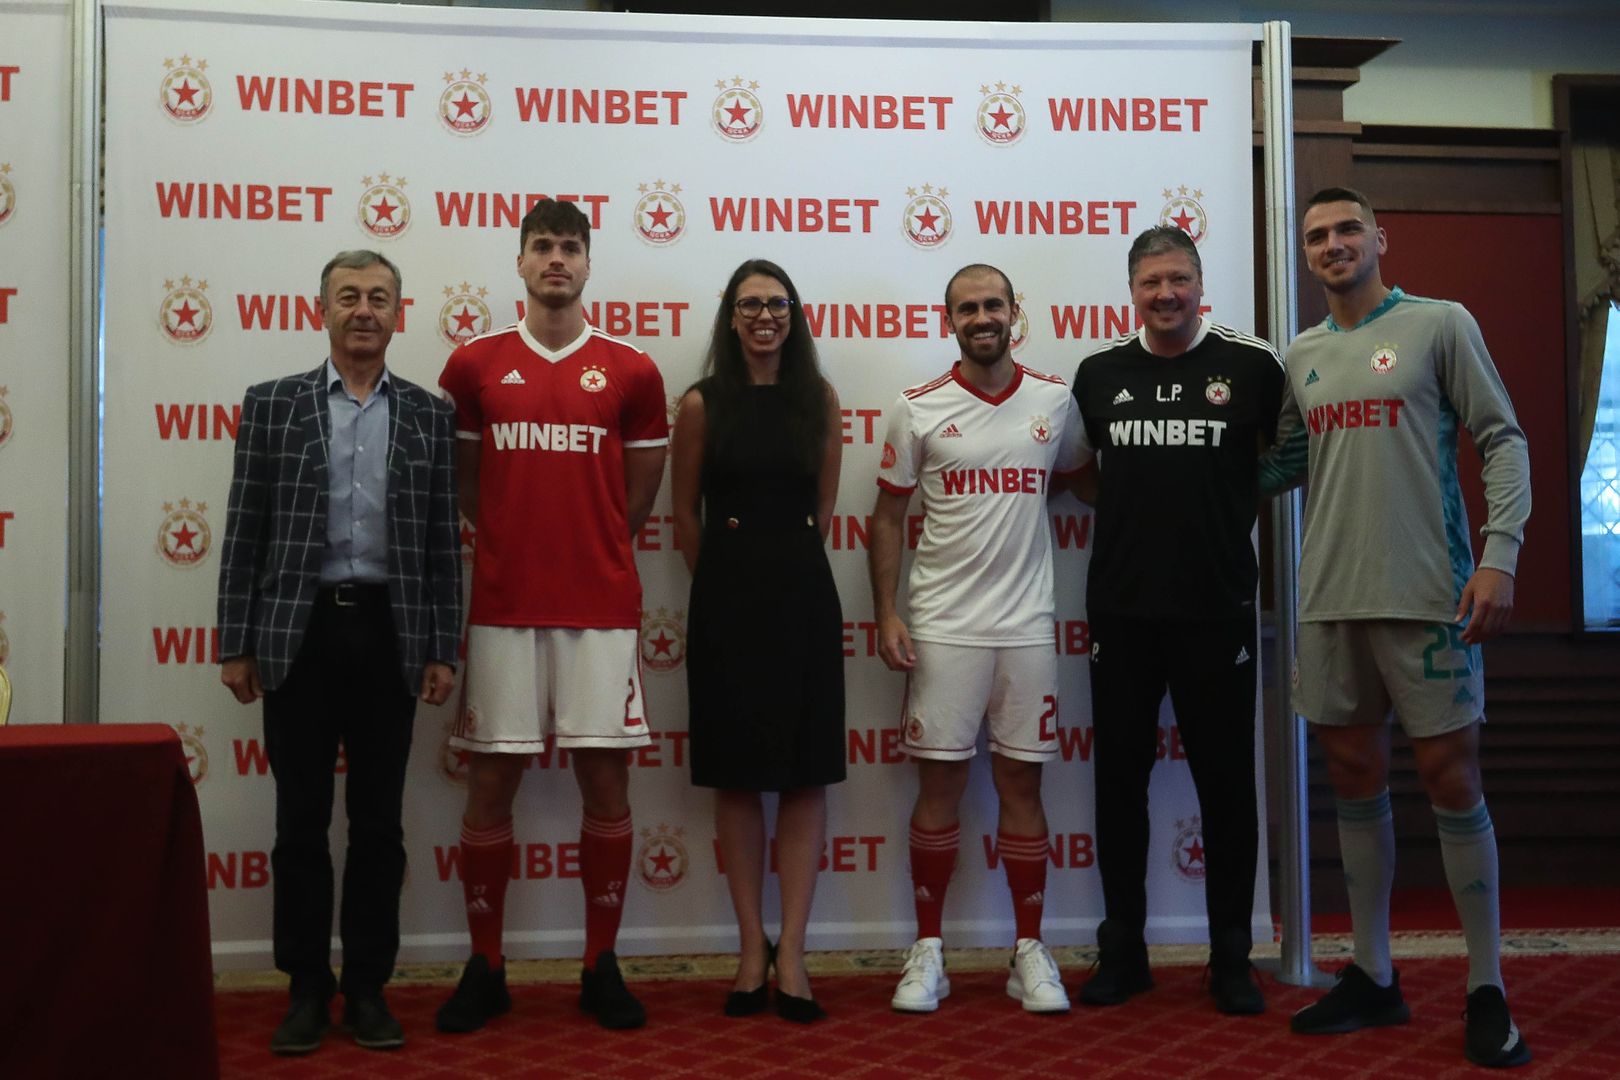 ЦСКА - София и WINBET представят новото си партньорство